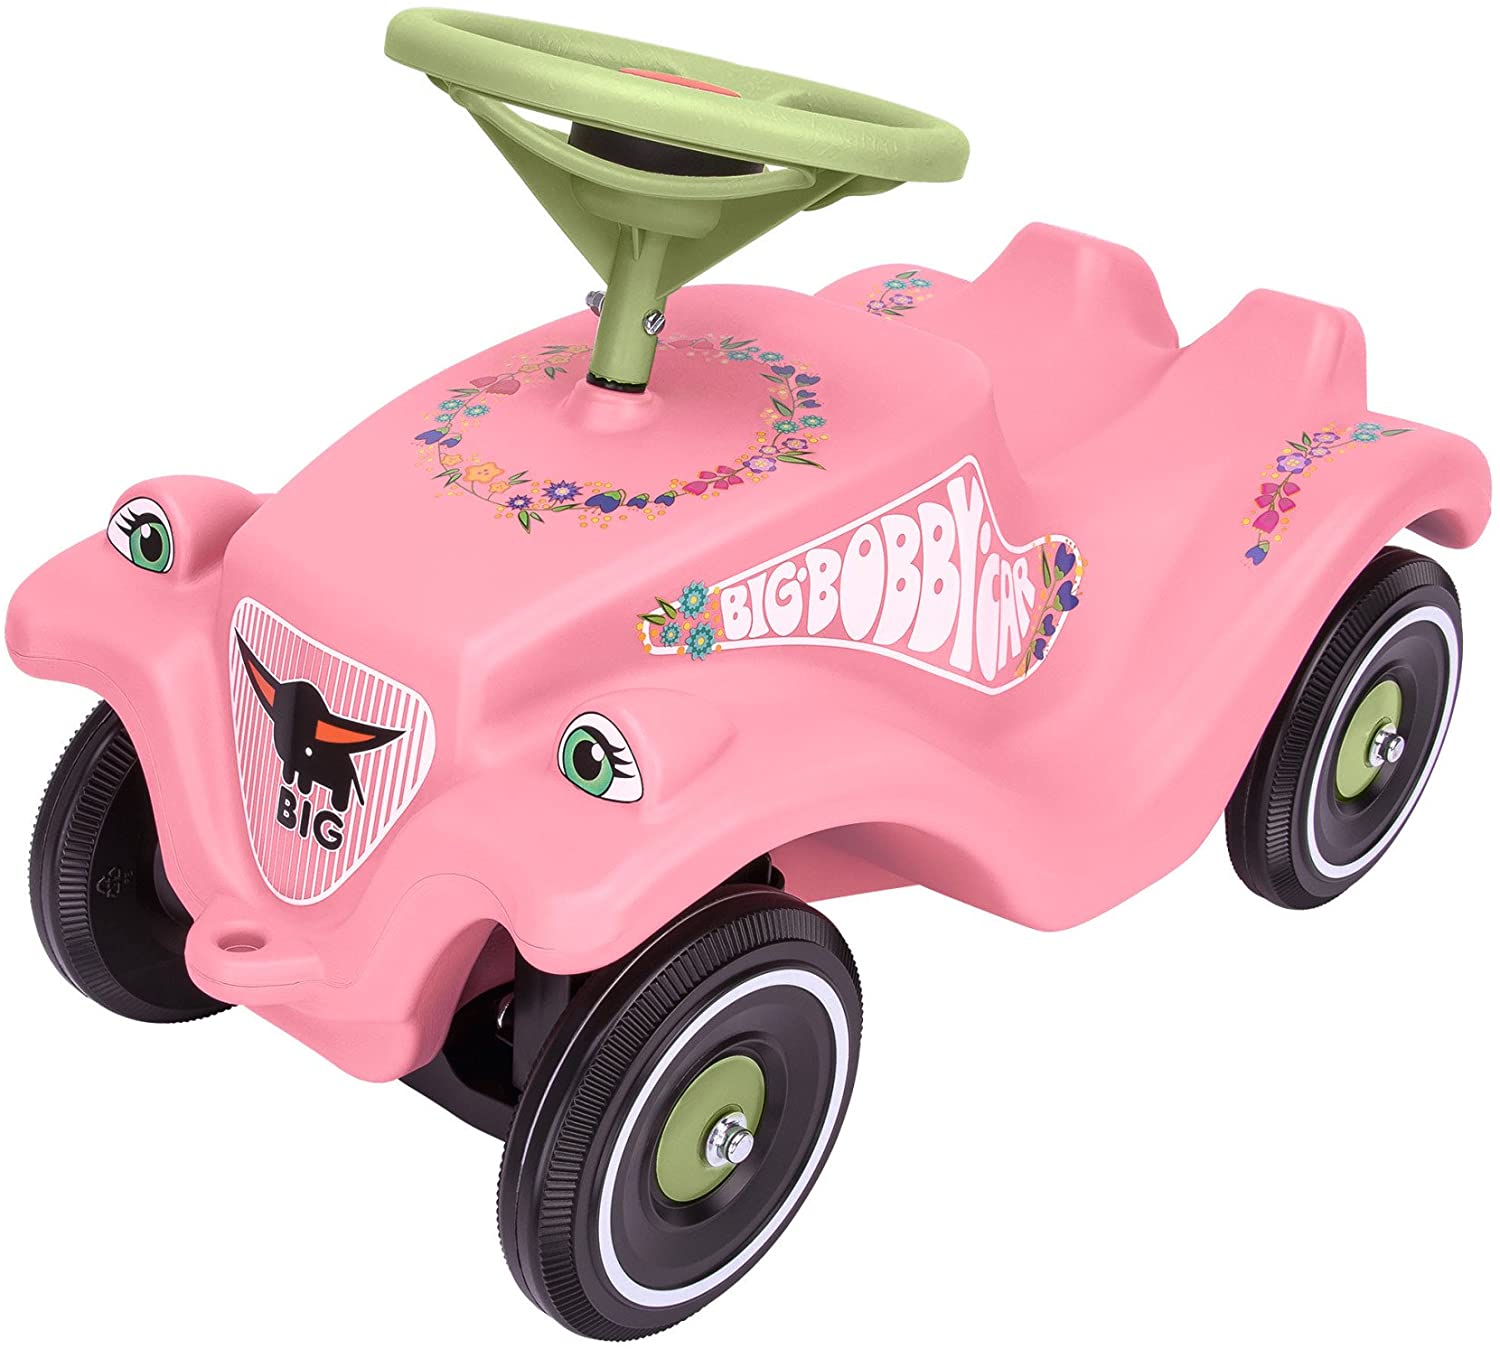 Big Spielwarenfabrik Kids Ride-On Car, Single, Pink